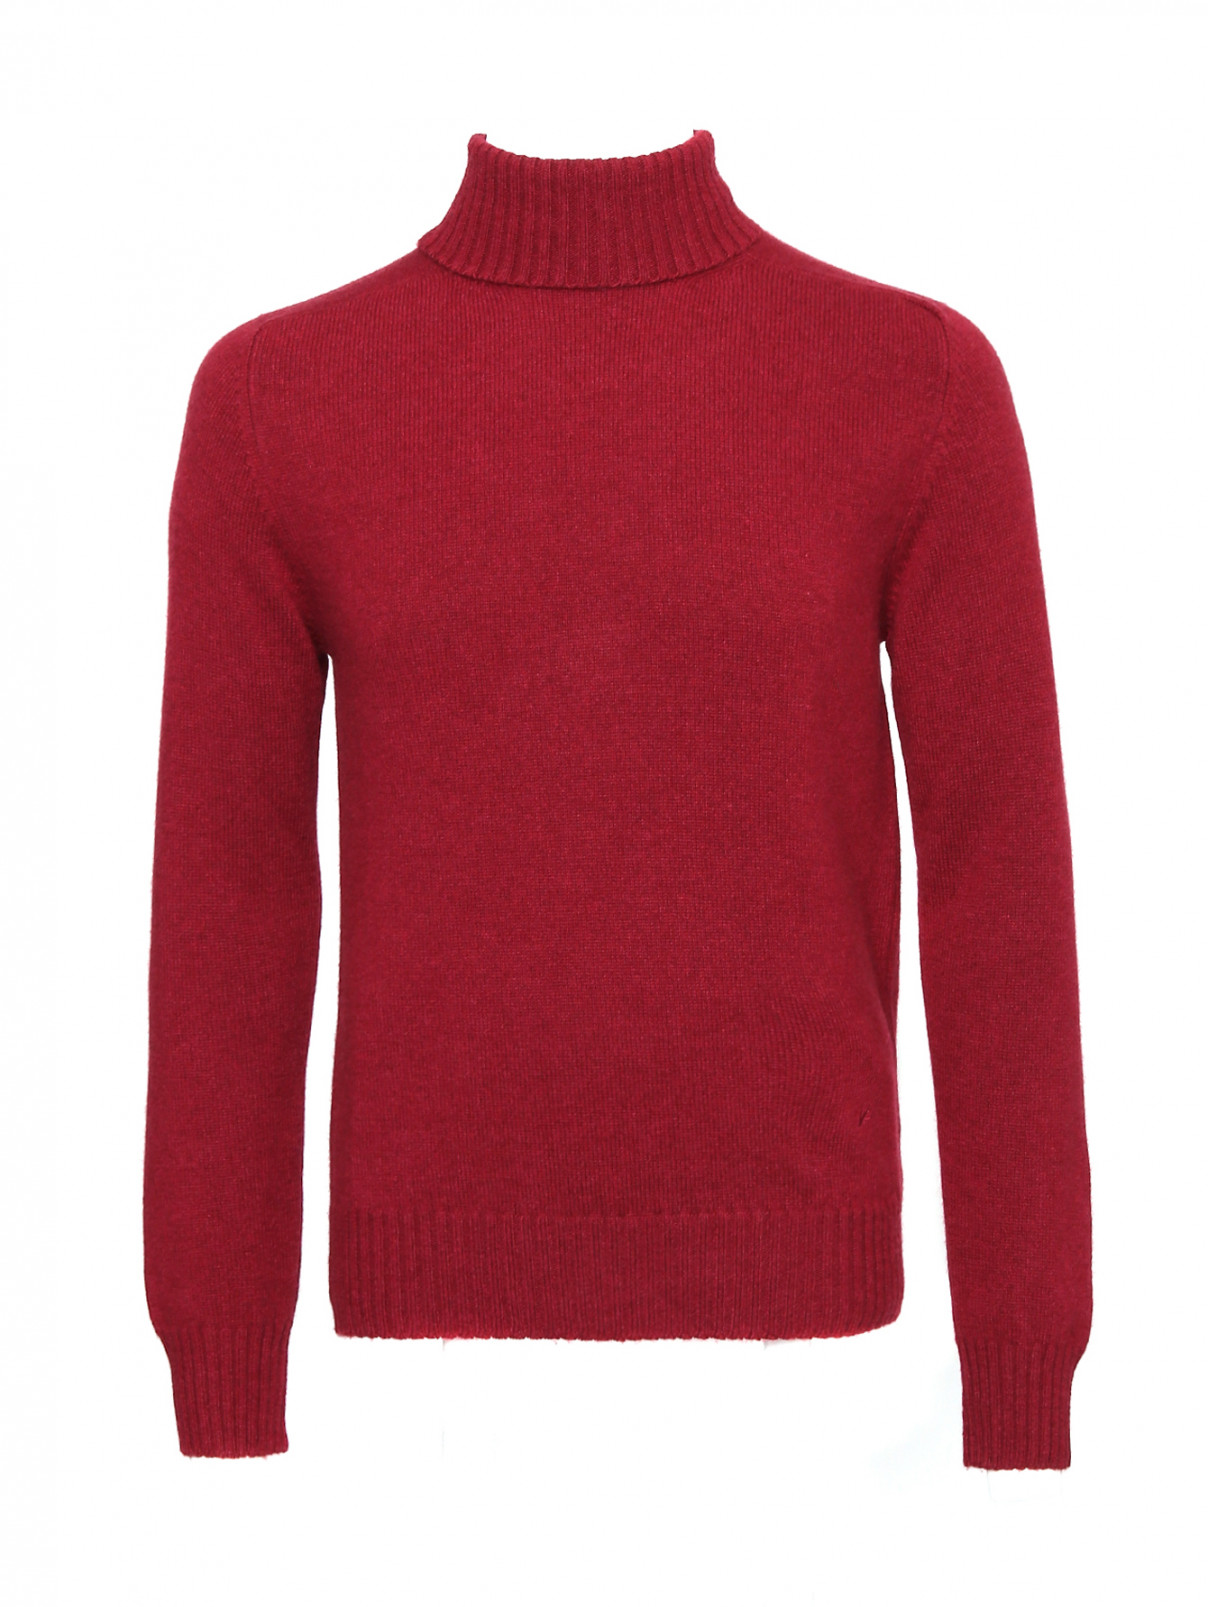 Однотонный свитер из кашемира Isaia  –  Общий вид  – Цвет:  Красный